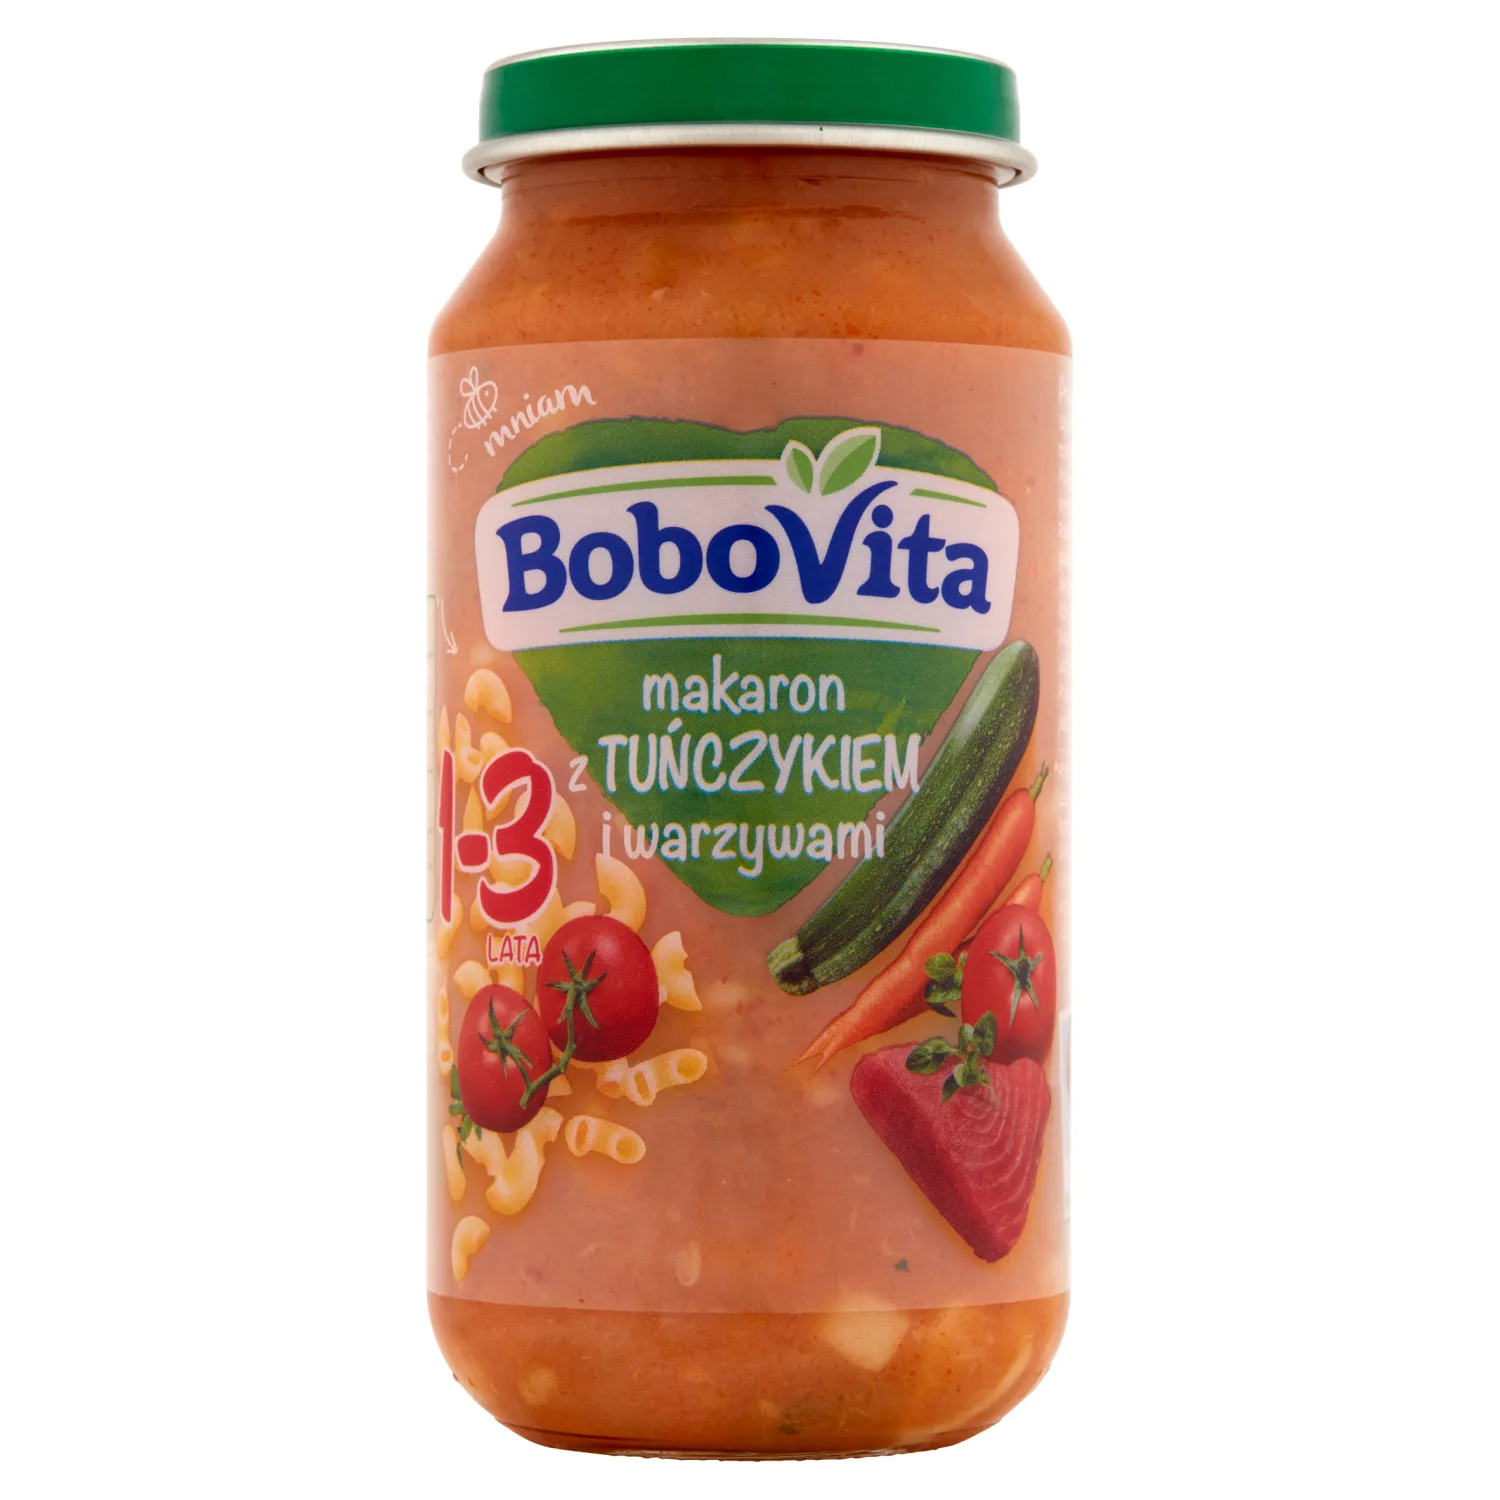 BoboVita makaron z tuńczykiem i warzywami dla dzieci w wieku 1-3 lat, 250 g